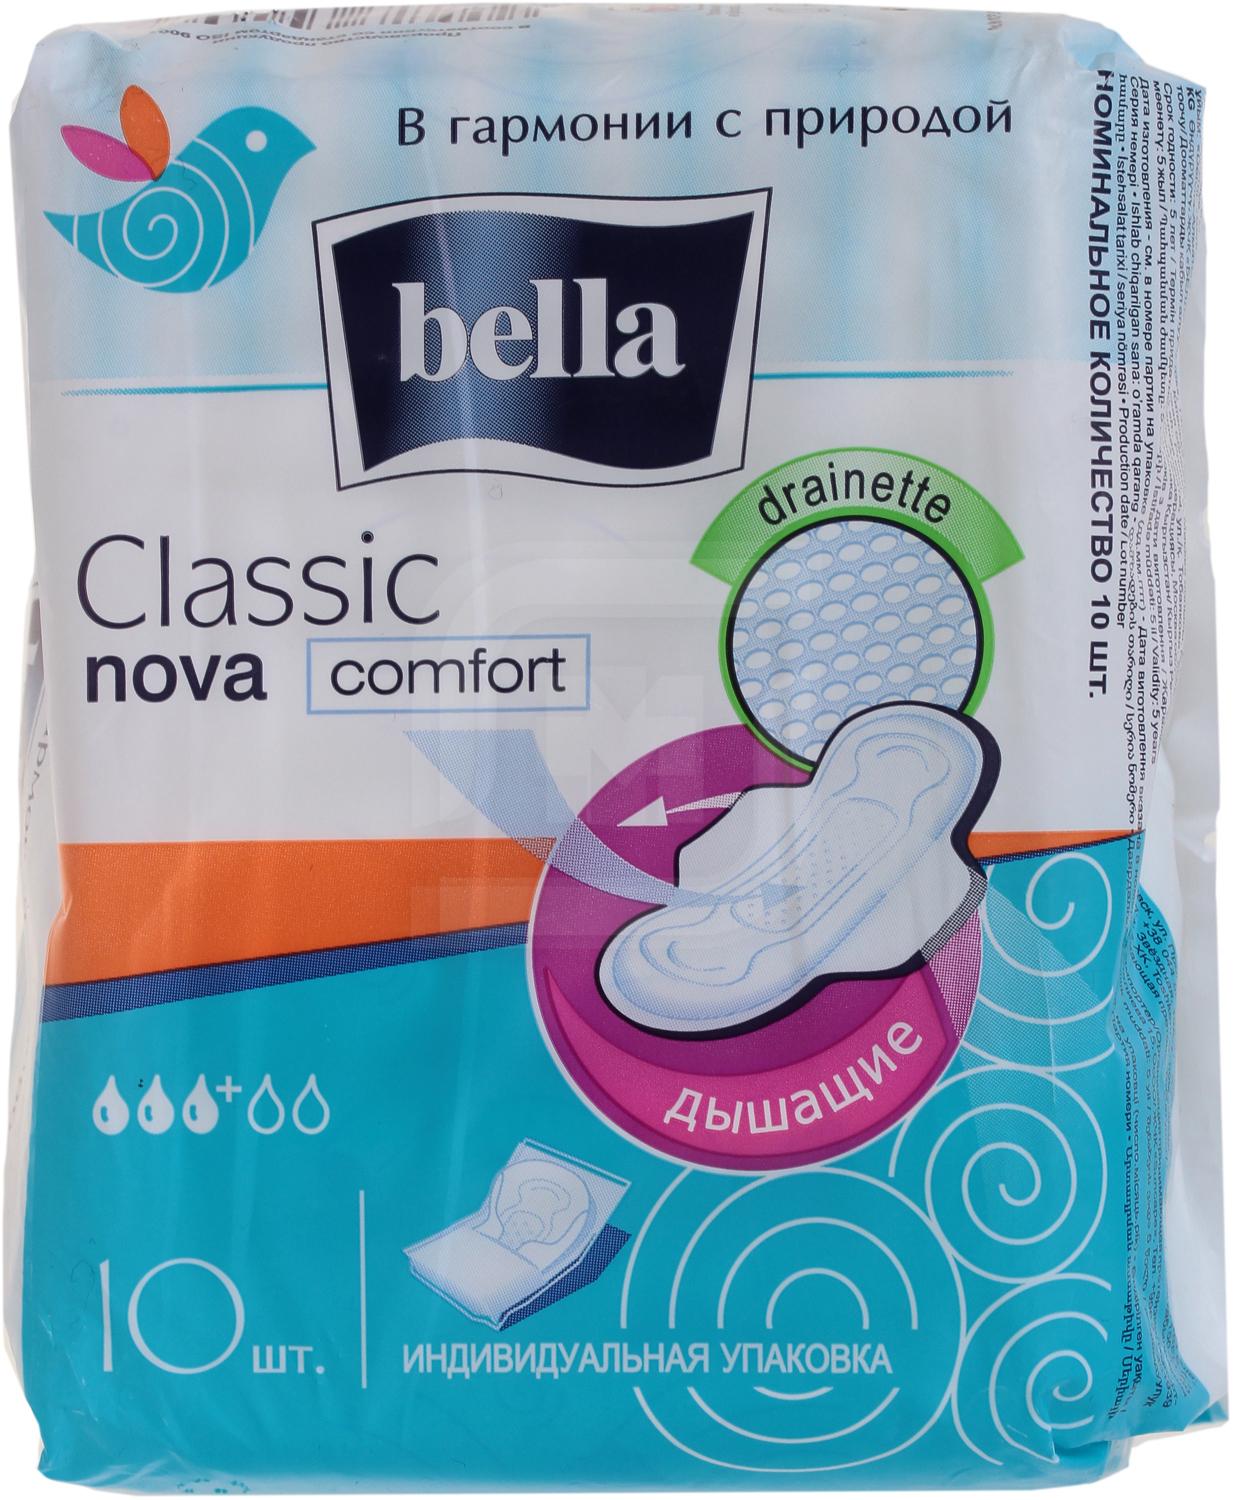 Прокладки Bella Classic Nova Comfort 10 шт прокладки женские bella nova classic comfort drainette air 10 шт be 012 rw10 e08